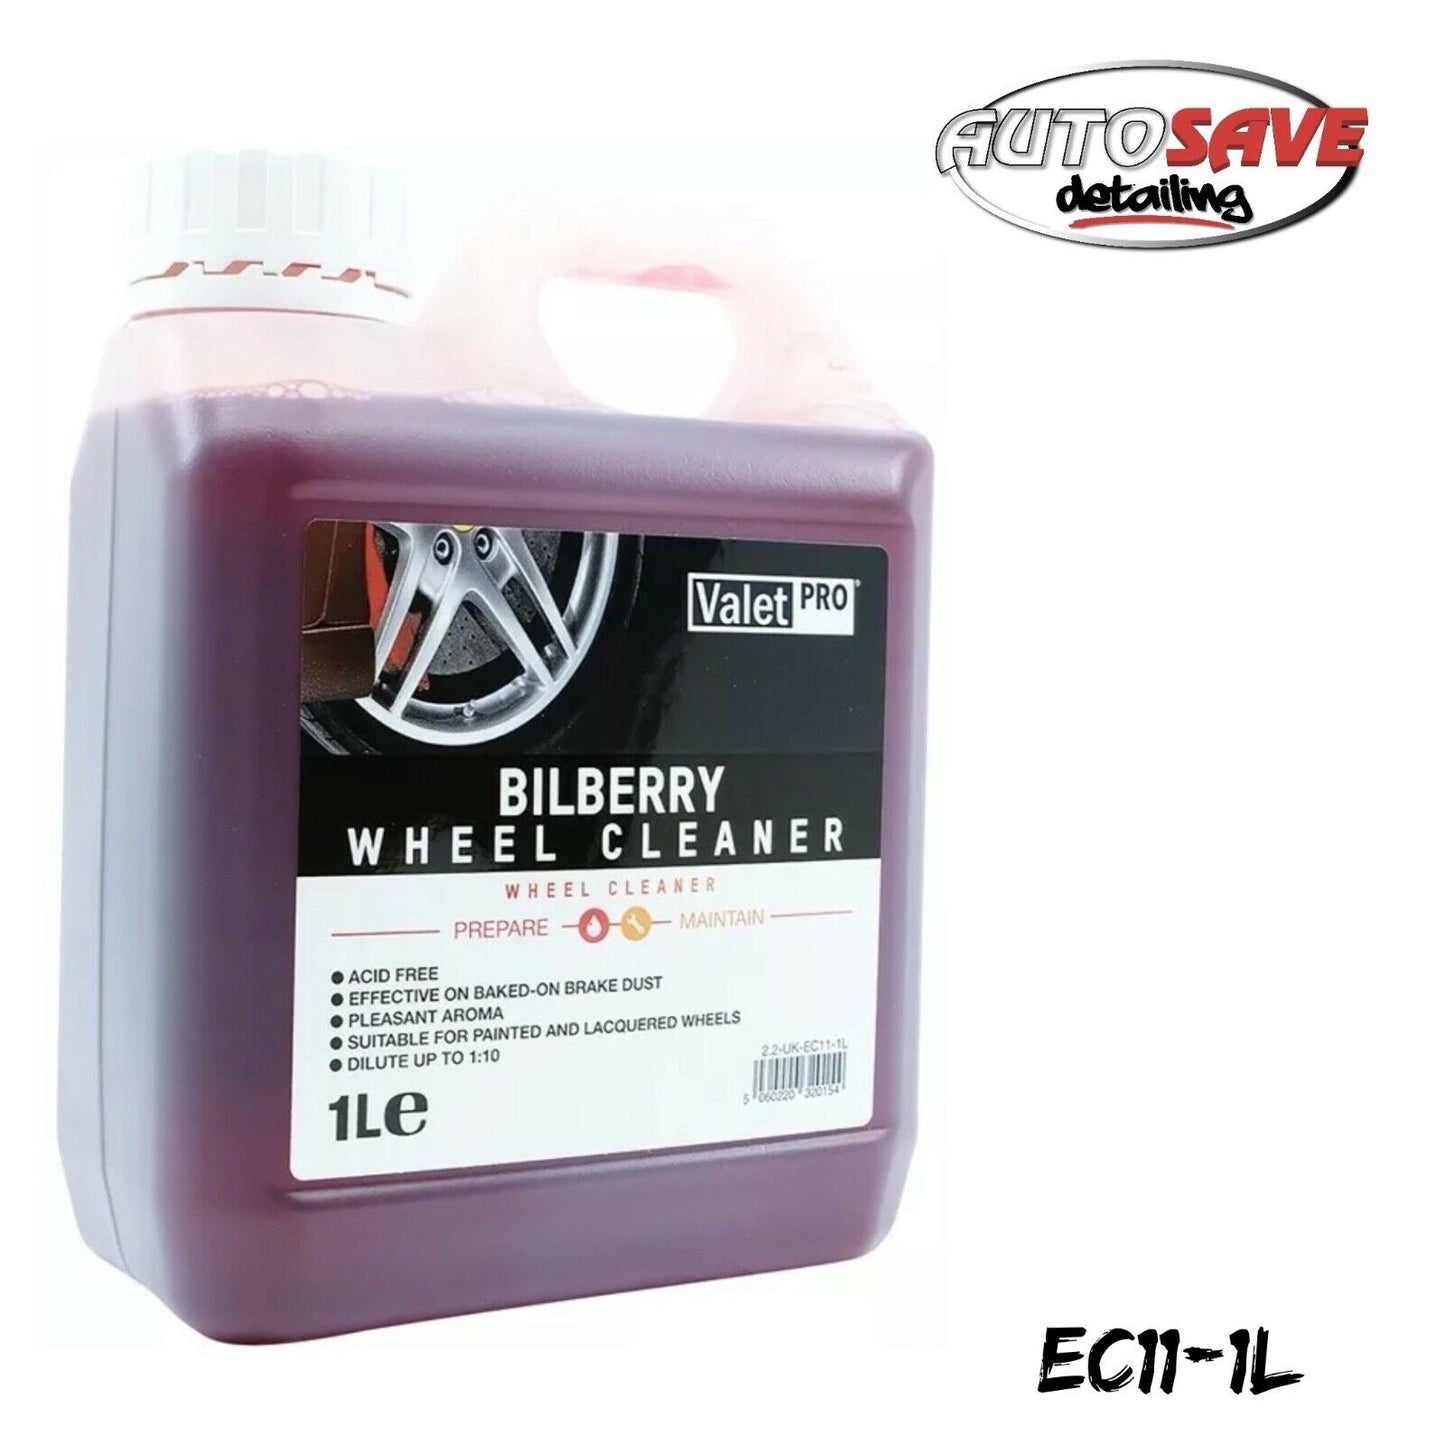 Valetpro Bilberry Wheel Cleaner Spray